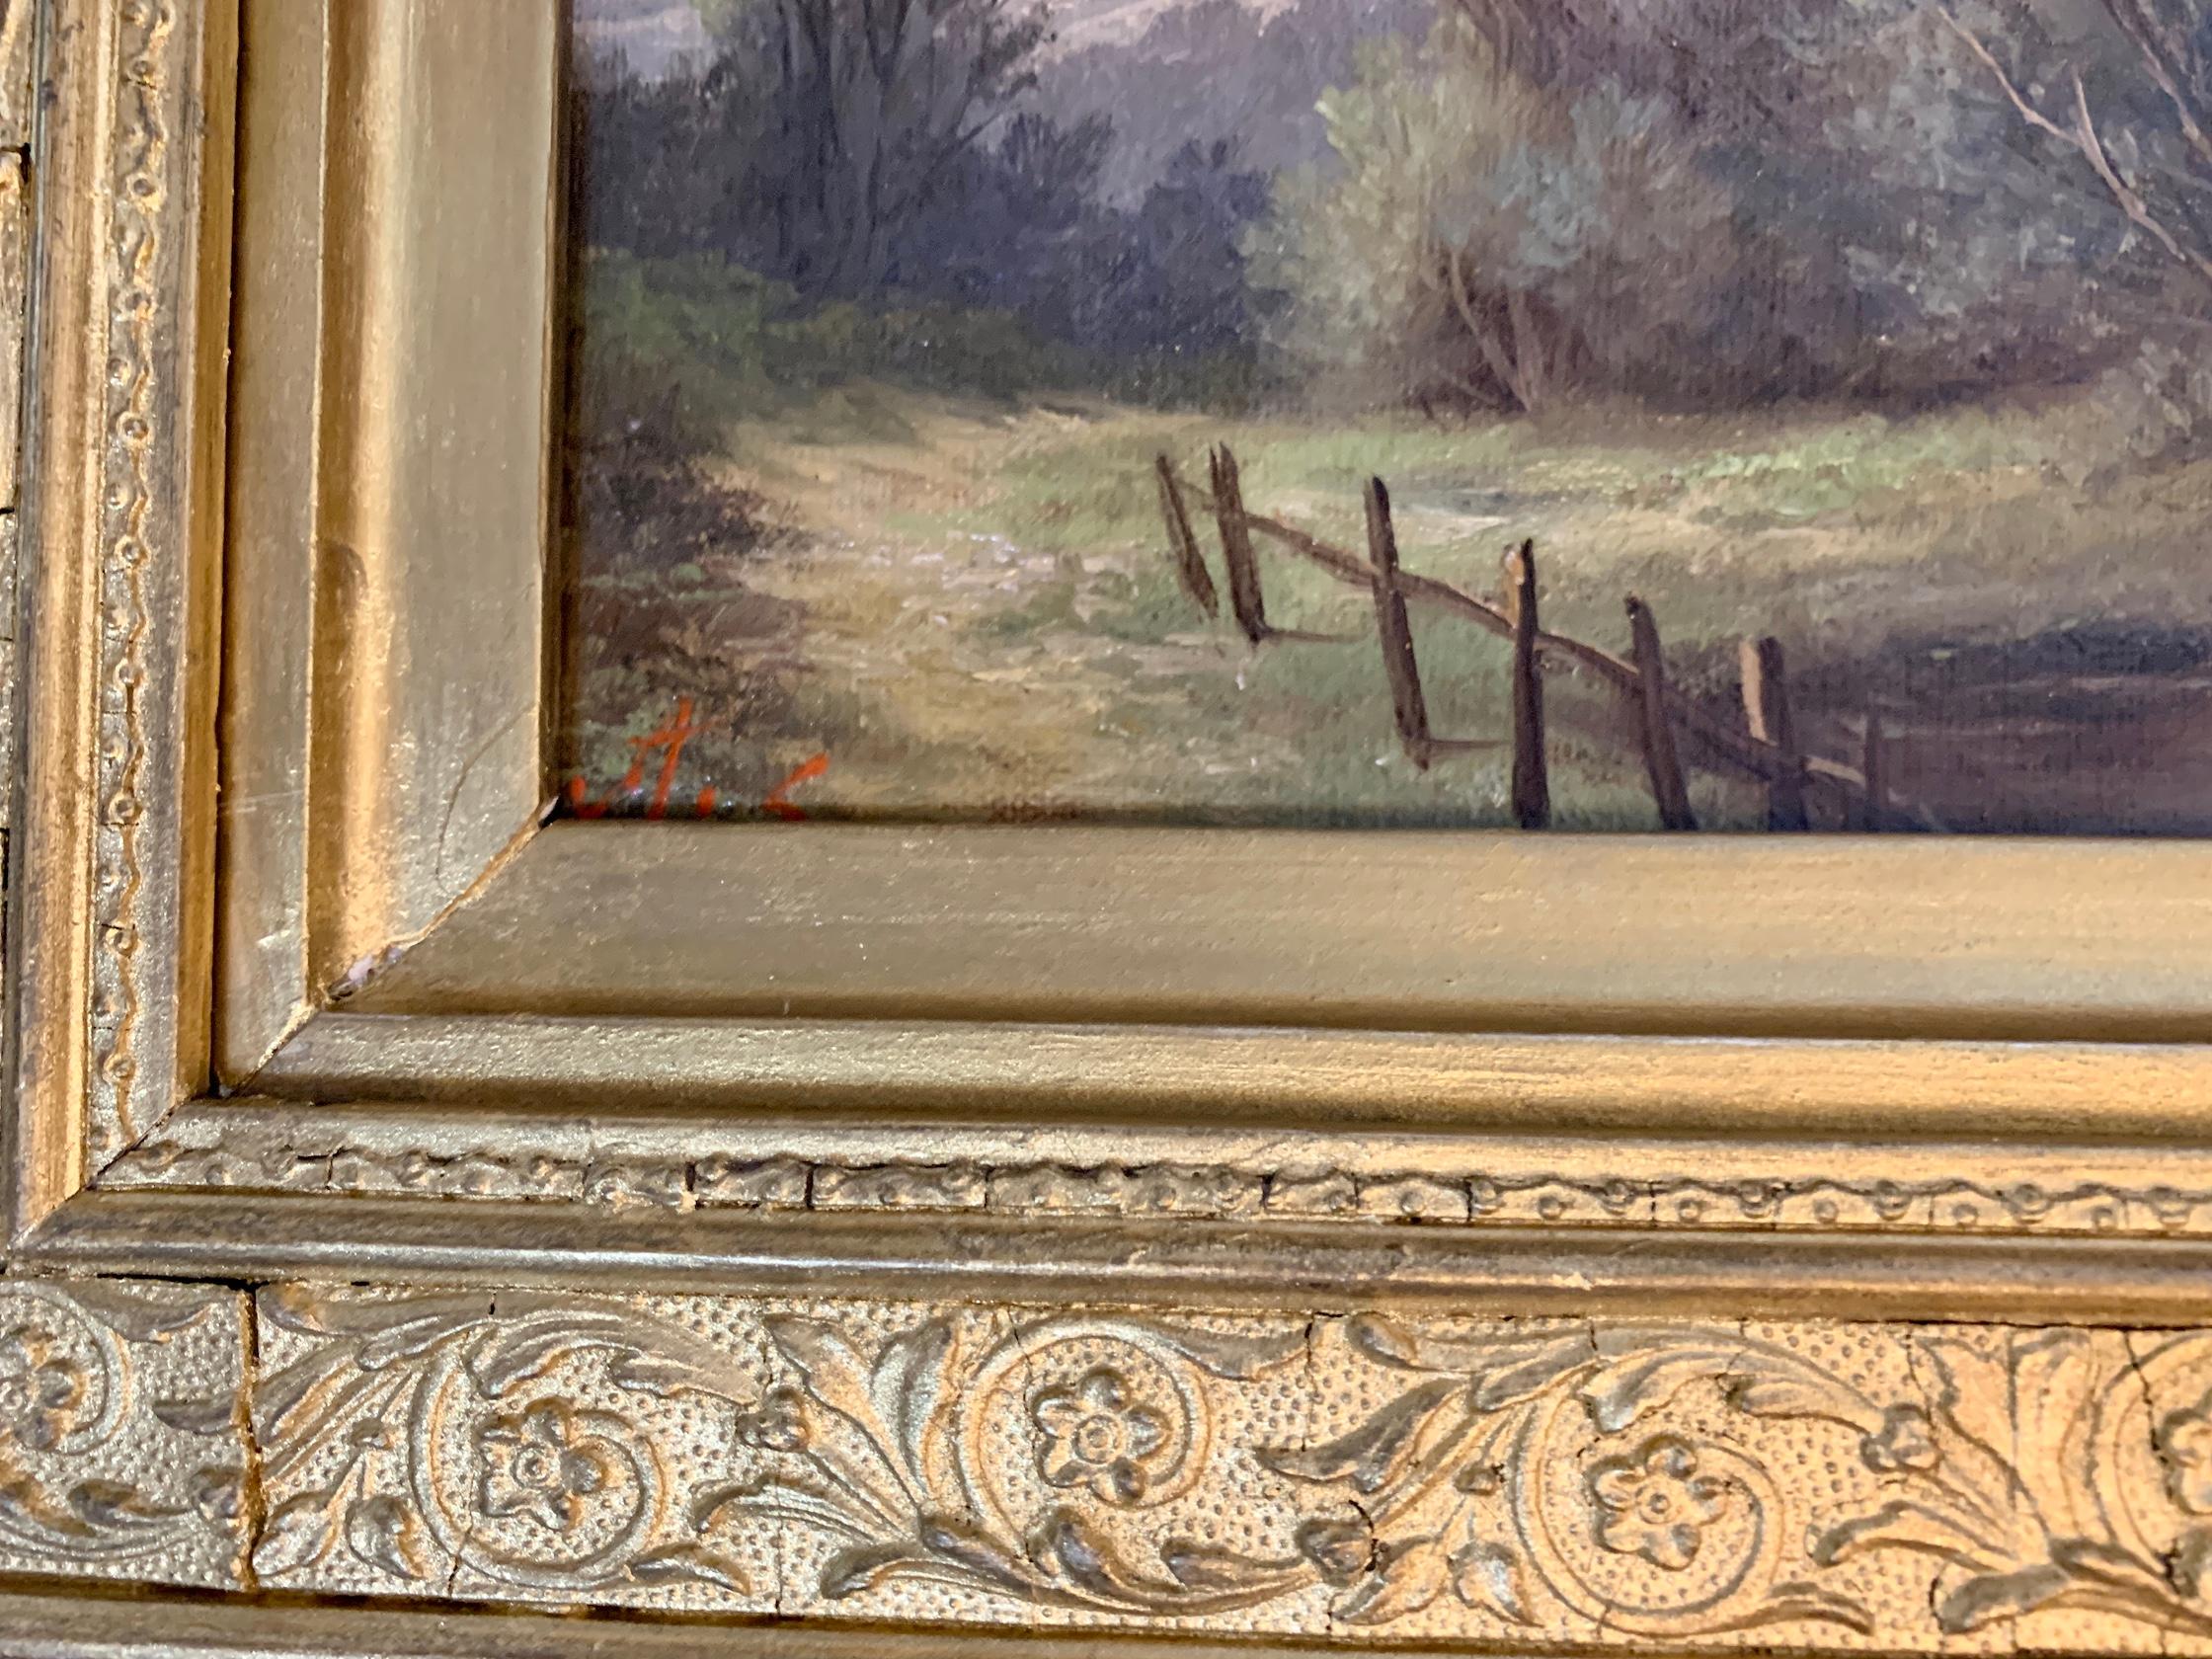 Ada Stone, paysage victorien anglais avec des chênes et des ifs sur un sentier.
Ada Stone avait une adresse à Londres mais était une peintre des East Midlands qui concentrait ses œuvres sur des paysages fluviaux tranquilles de l'Angleterre. Elle